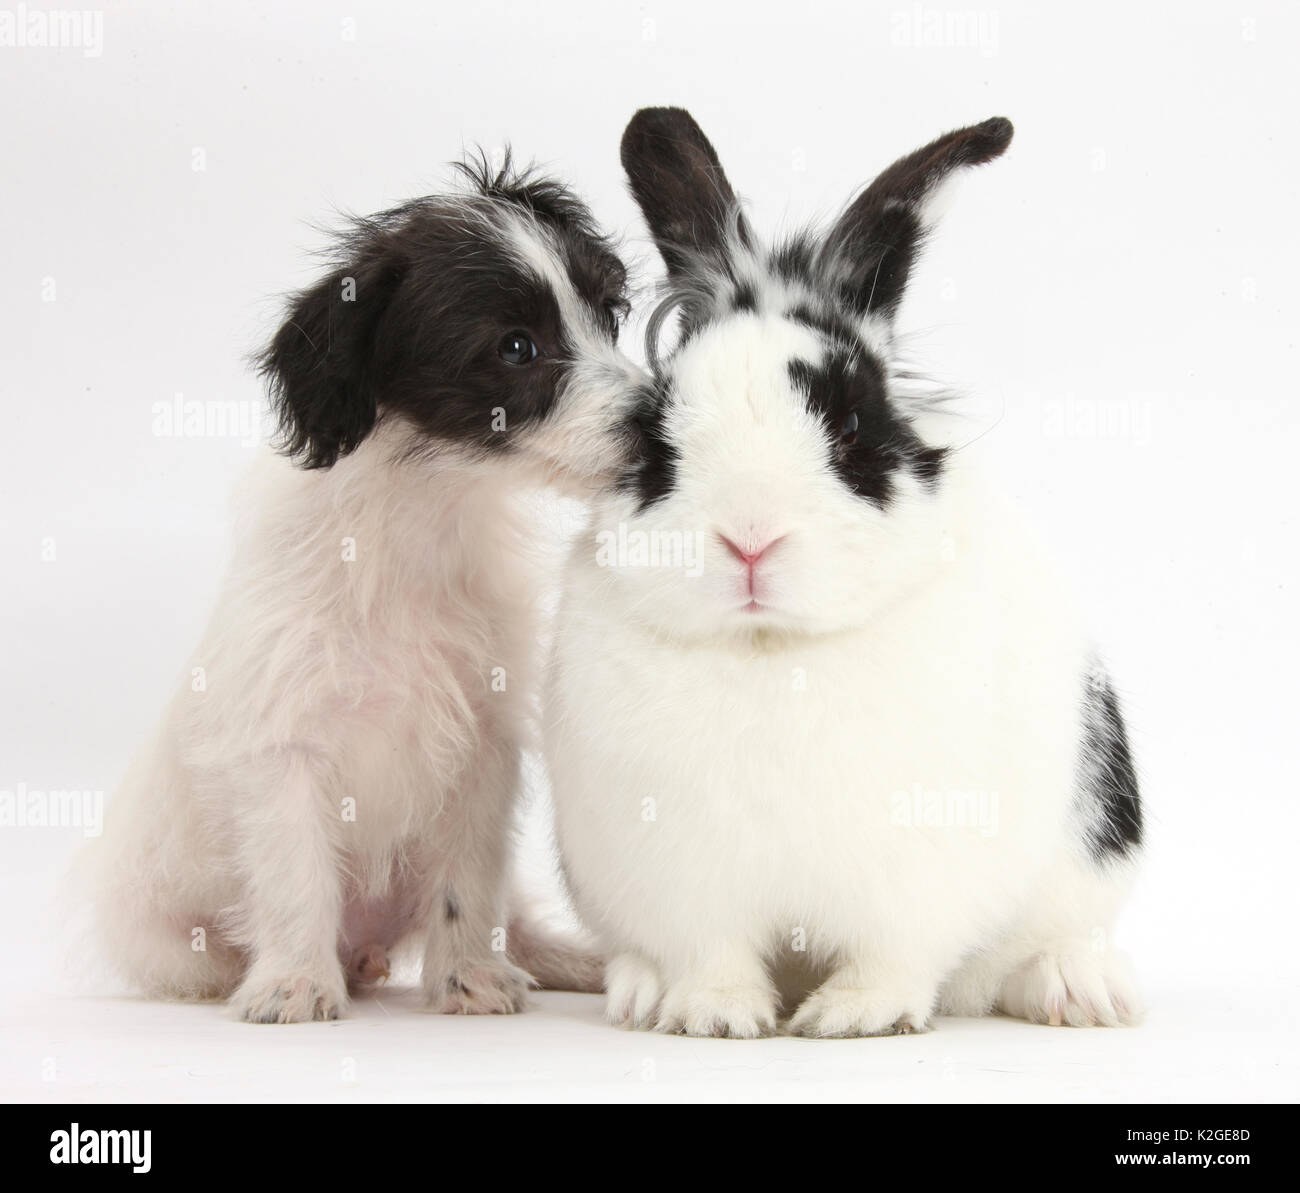 In bianco e nero Jack-a-poo, Jack Russell croce cane barboncino pup, di età di 8 settimane e in bianco e nero il coniglio. Foto Stock